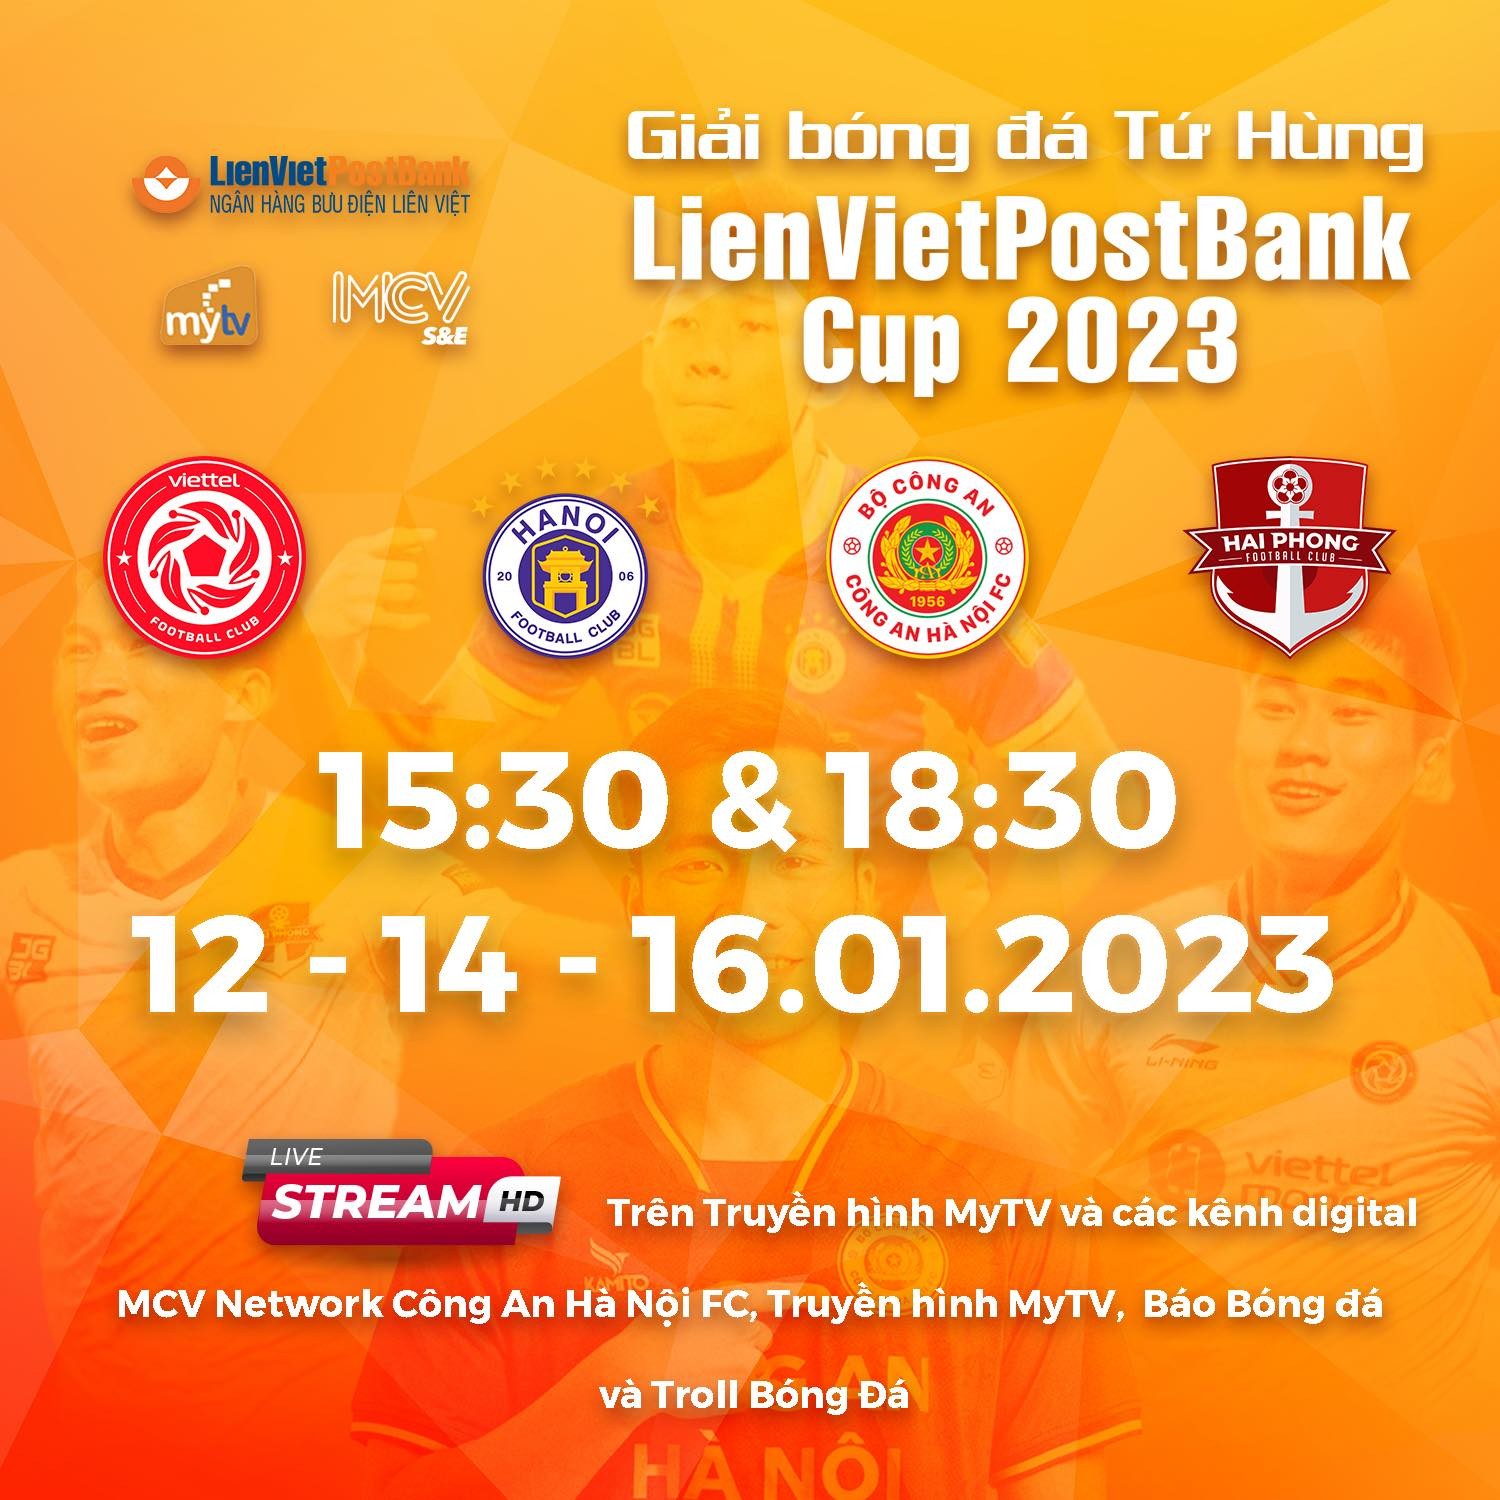 Giải Tứ hùng LienVietPostBank Cup 2023: Kiểm chứng sức mạnh của CLB CA Hà Nội